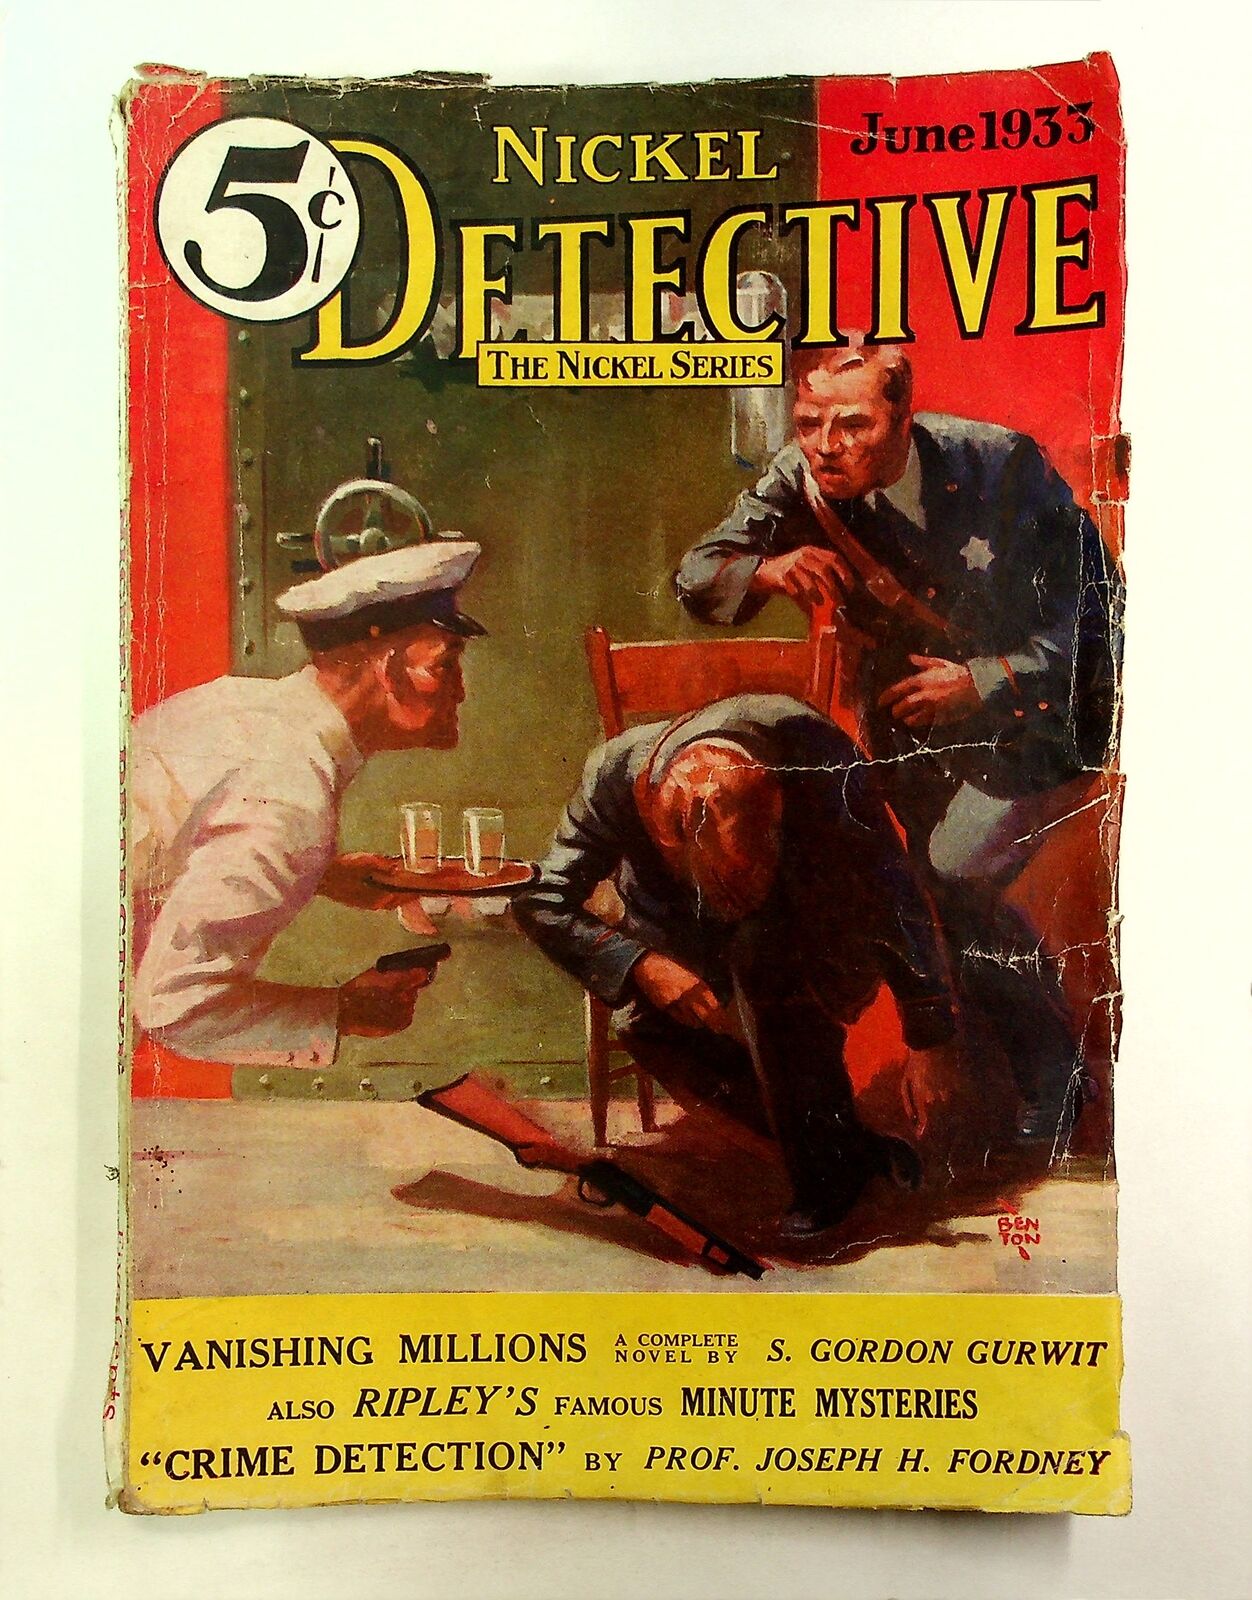 Nickel Detective Pulp Jun 1933 Vol. 4 #4 GD+ 2.5